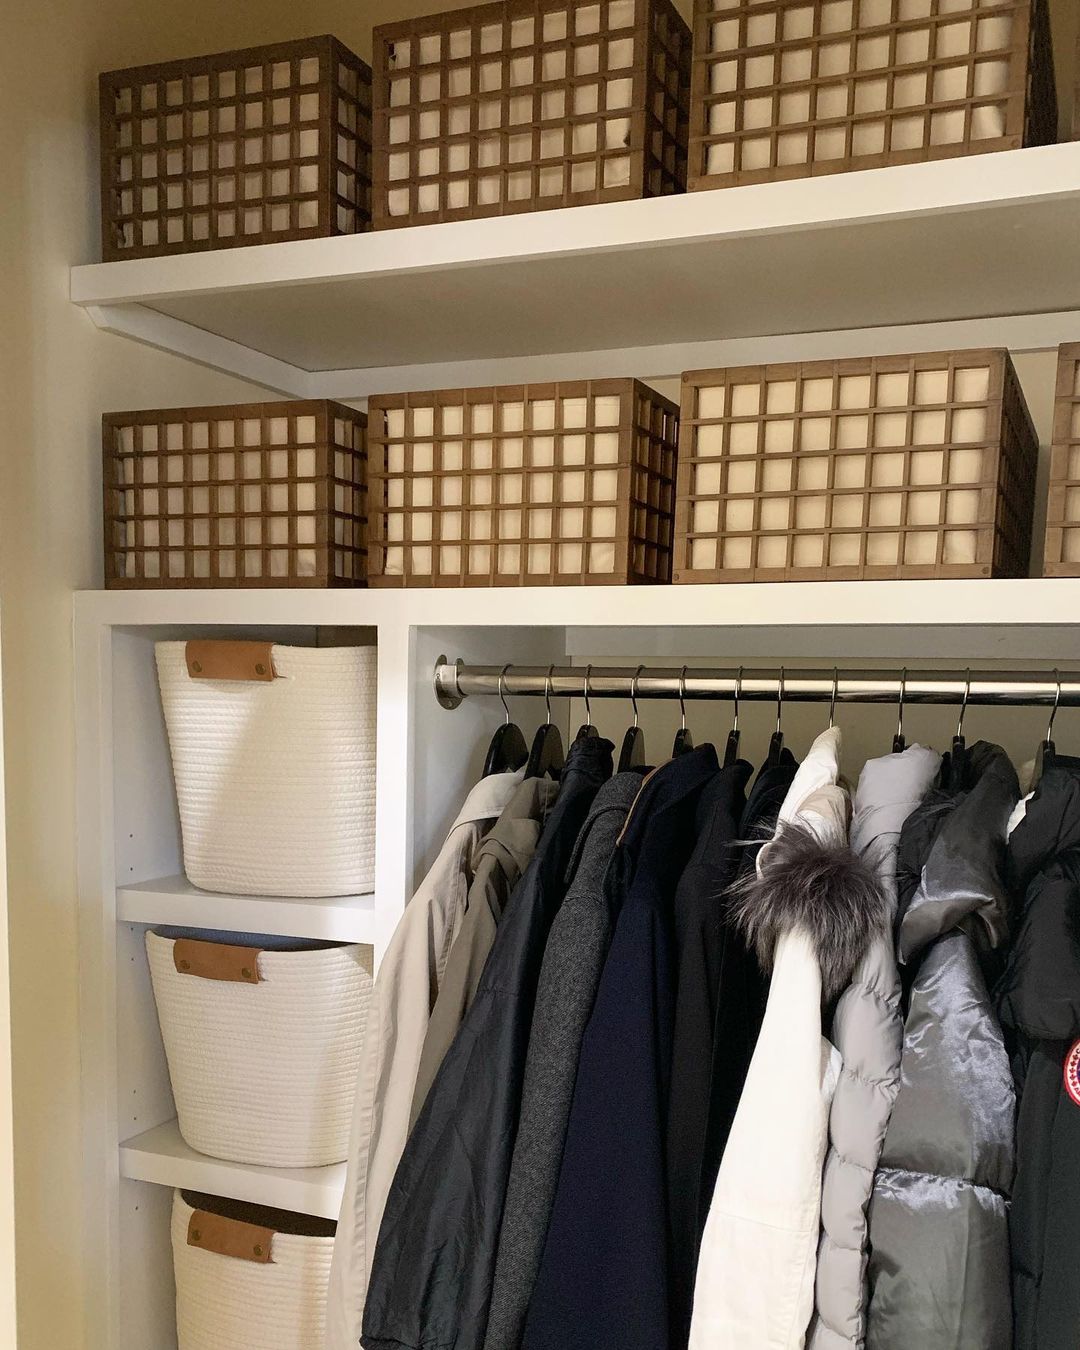 Decluttered Closet with Storage Bins. Photo by Instagram user @organizebynina